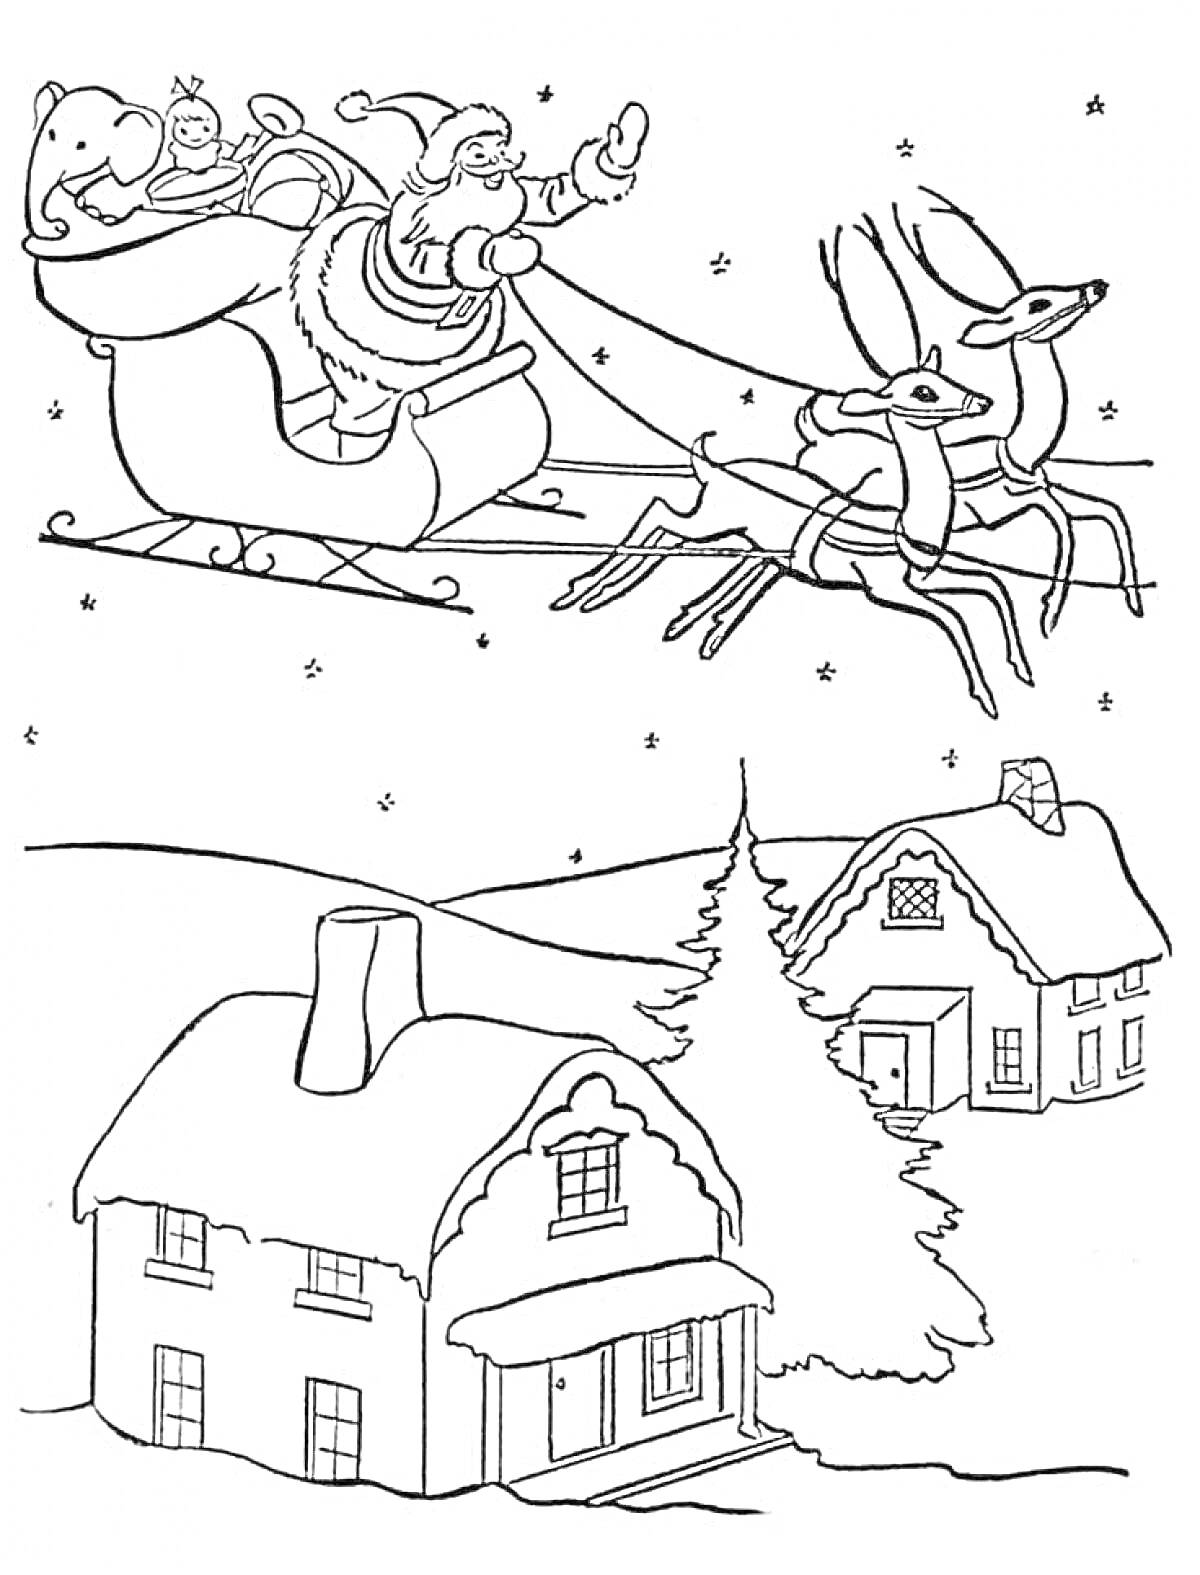 Раскраска Дед Мороз в санях с оленями над домом, снеговиком и деревьями